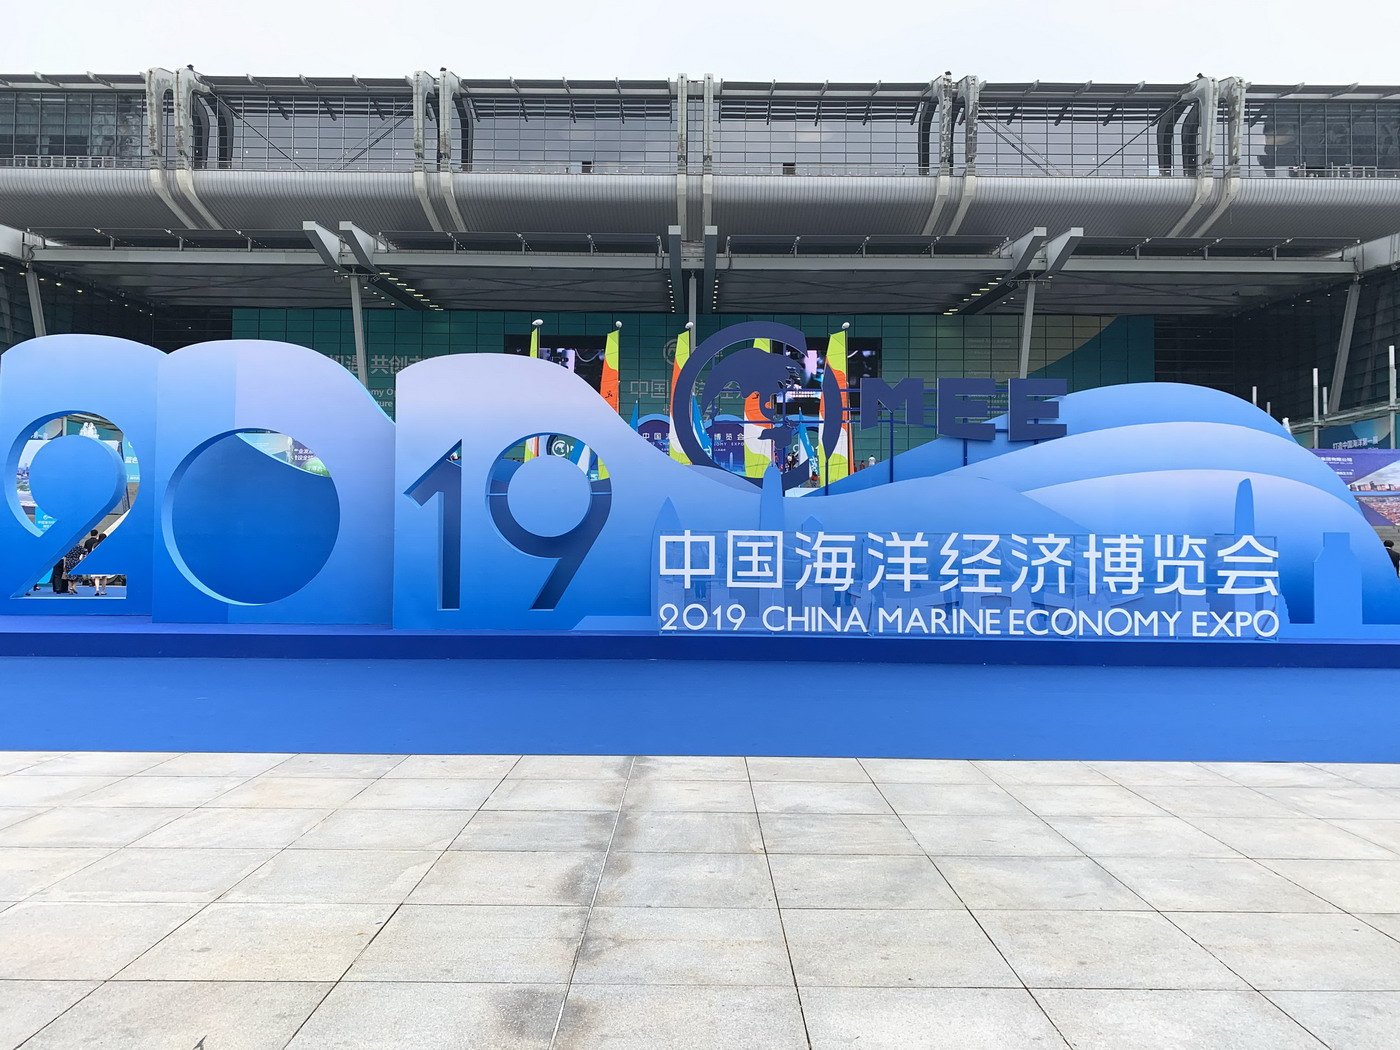 深圳海博会将于10月在深开幕，主题为“海洋发展史” 展会新闻 第1张